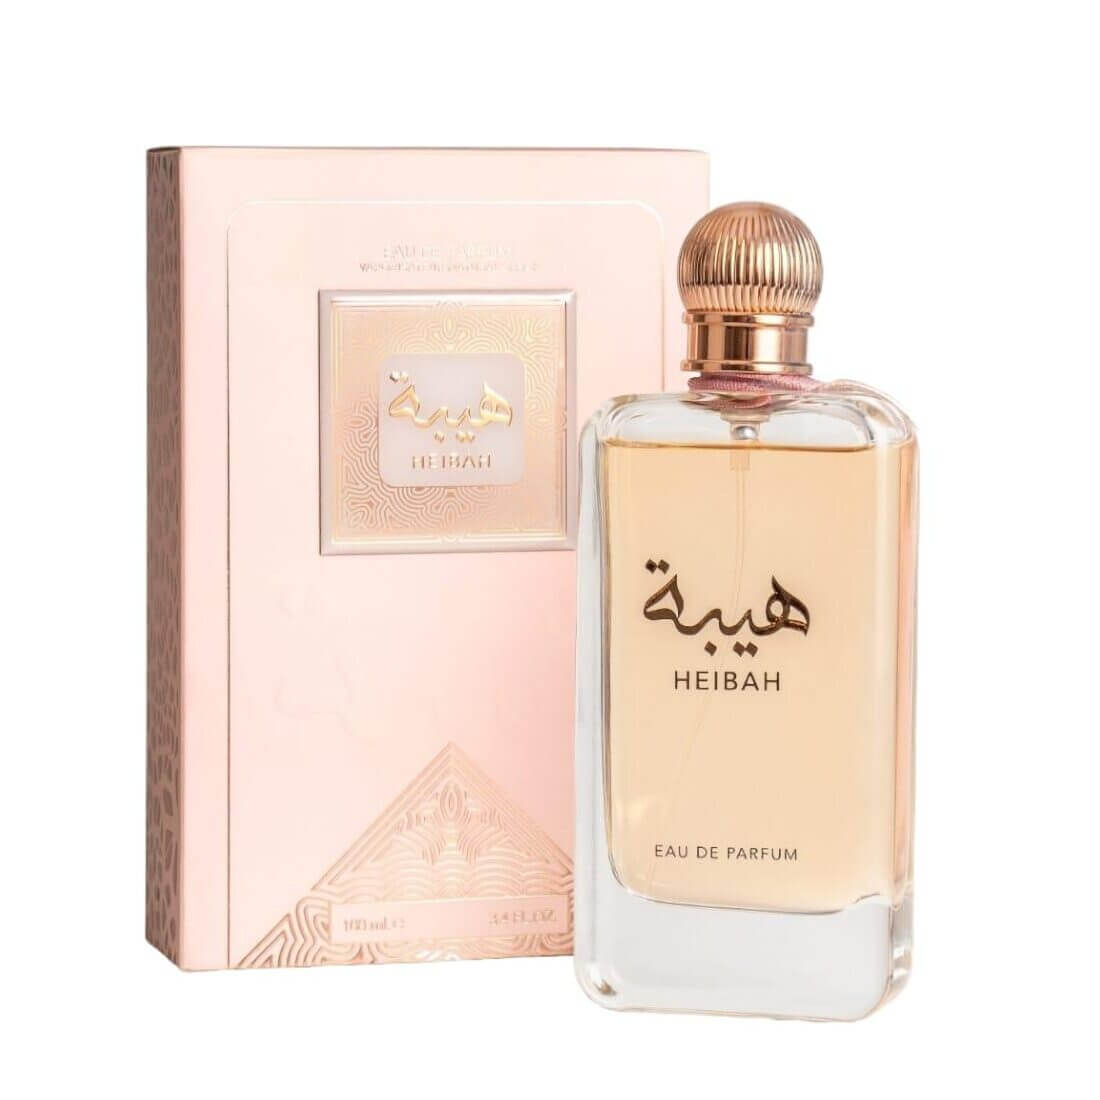 Heibah Perfume / Eau De Parfum 100Ml By Ard Al Zaafaran